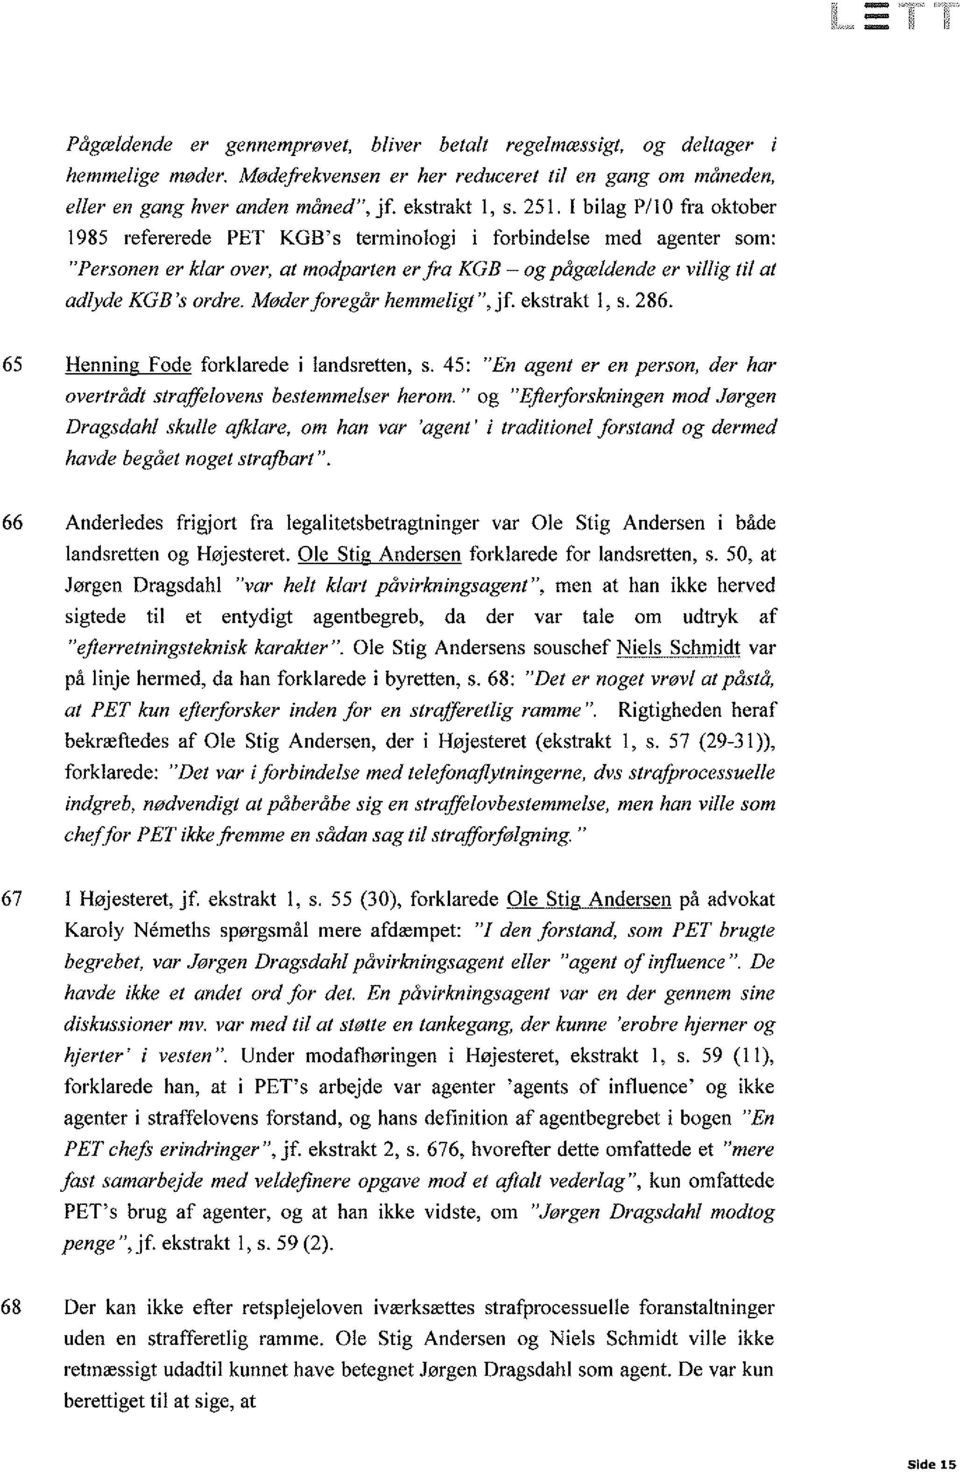 Møderþregår hemmeligt", jf. ekstrakt l, s.286. 6s Henning Fode forklarede i landsretten, s. 45: "En agent er en person, der har overtrådt strffilovens bestemmelser herom.